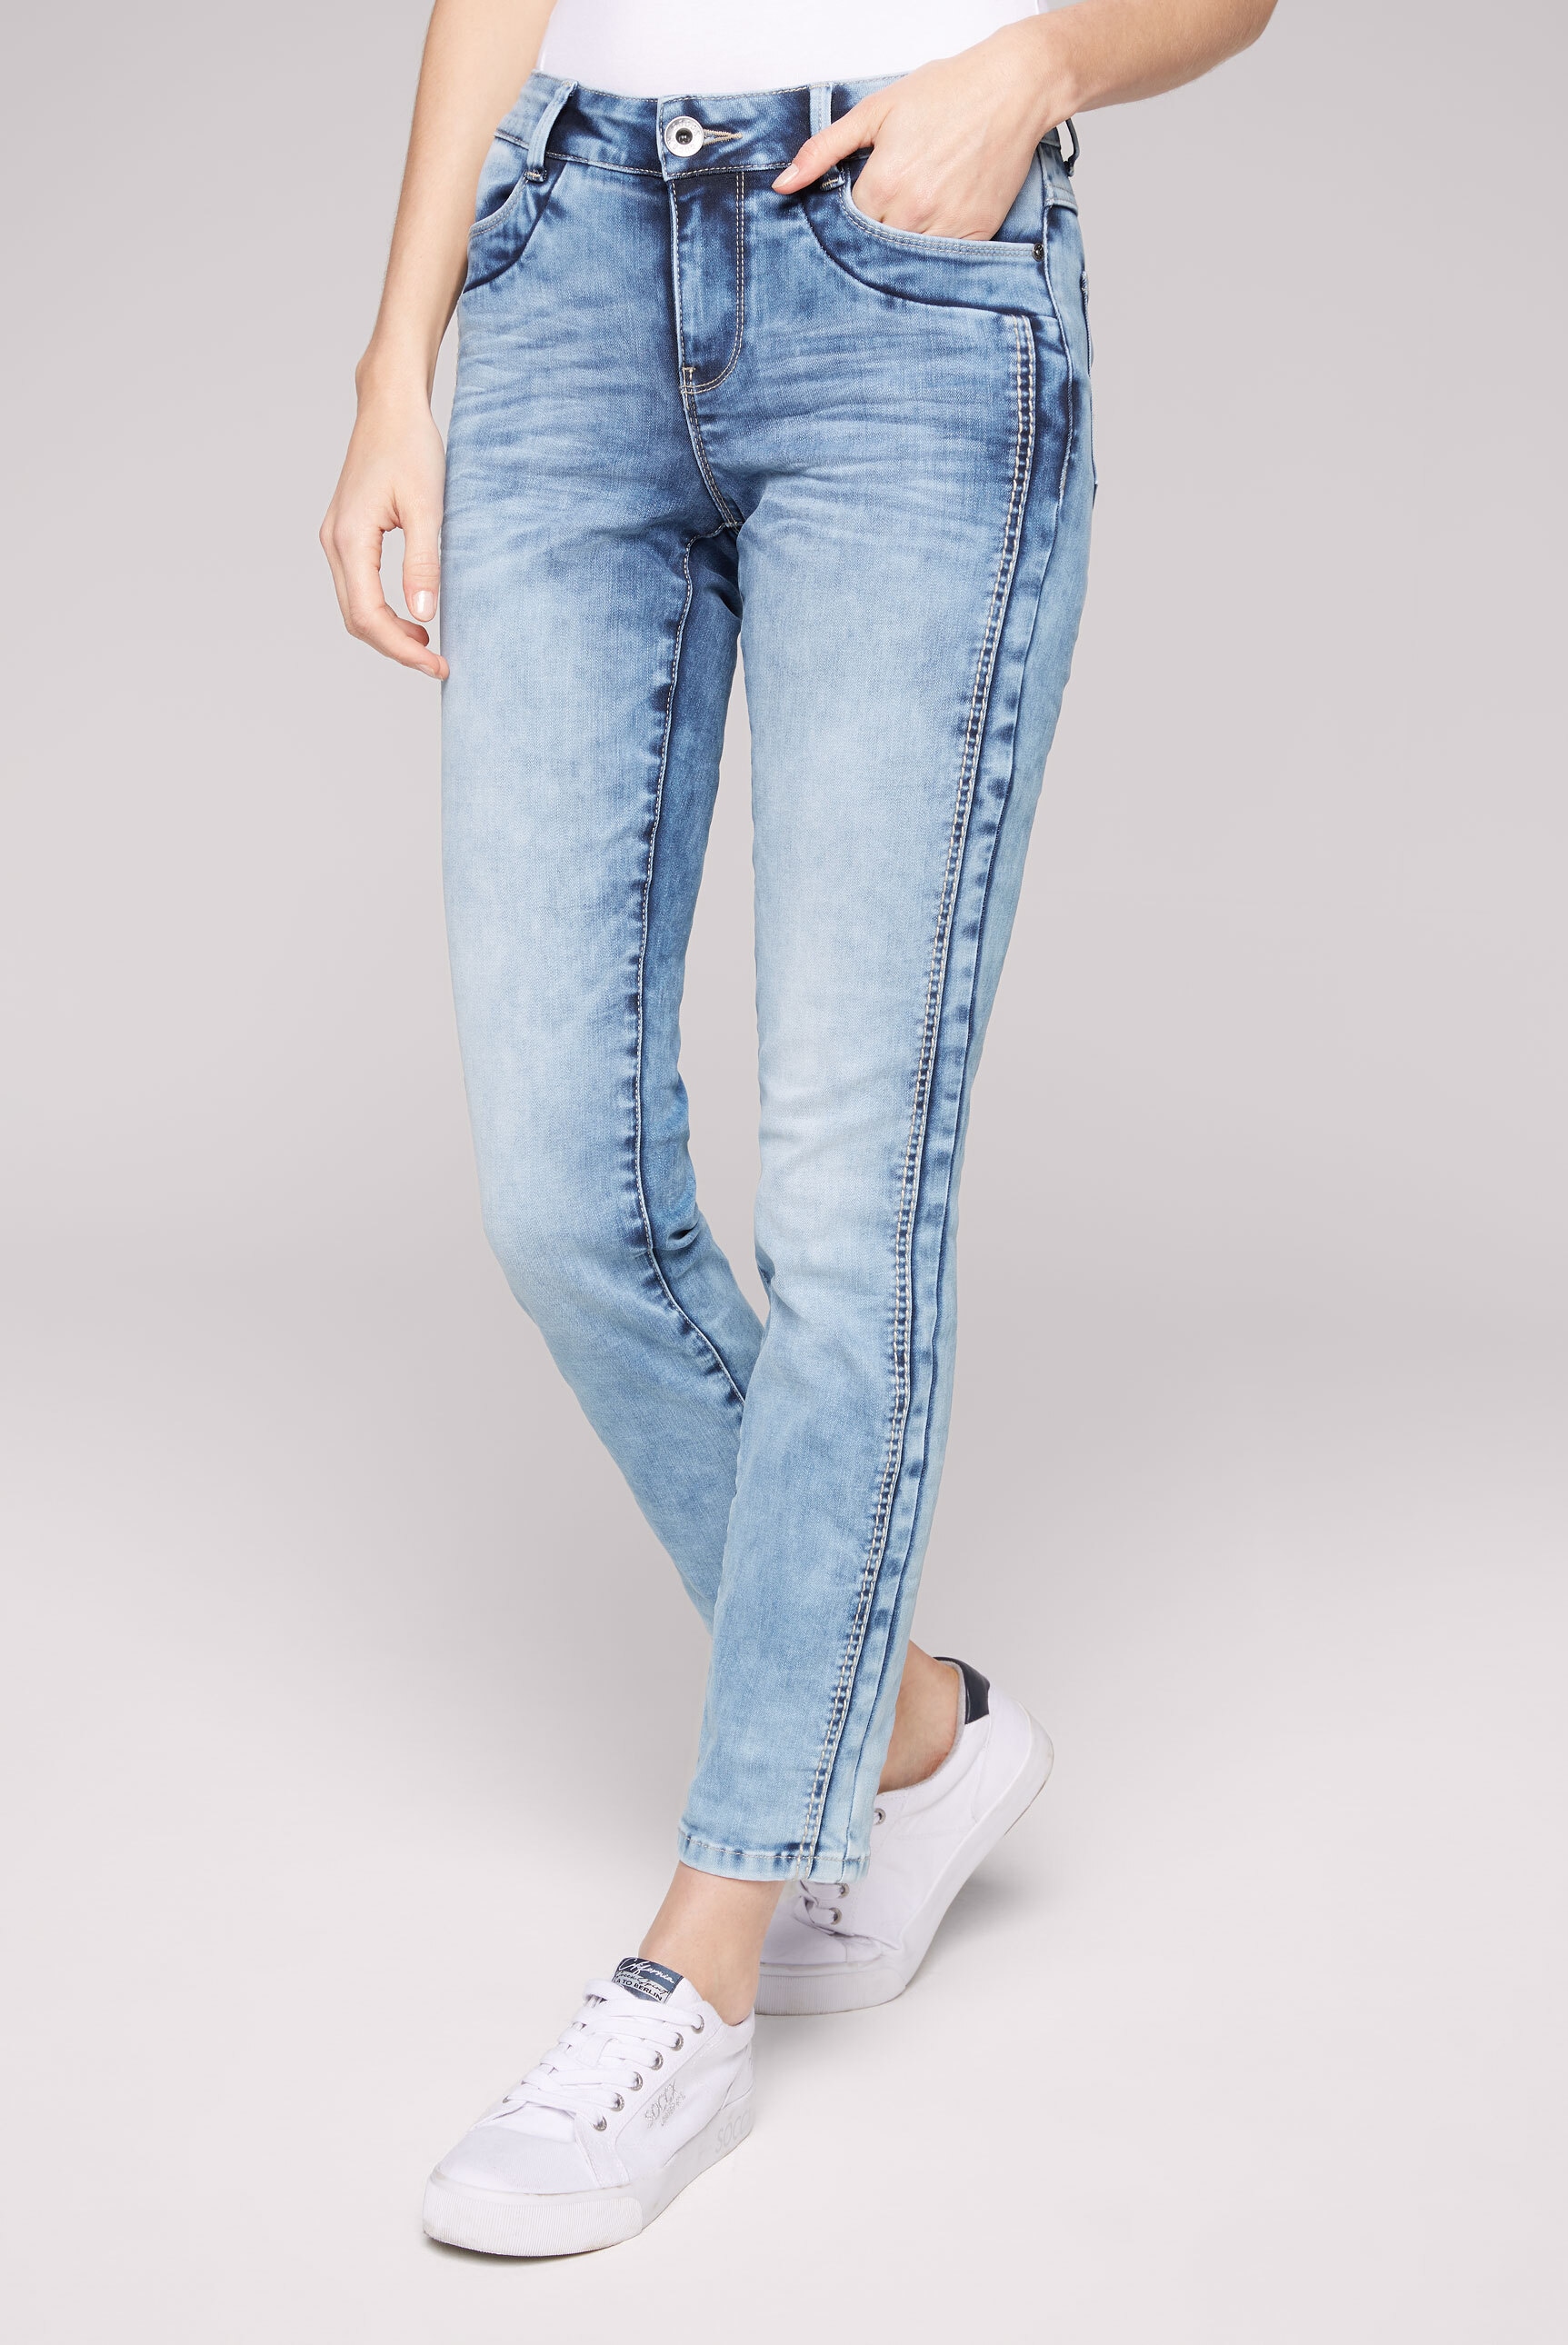 verkürztem SOCCX Comfort-fit-Jeans, Bein kaufen mit